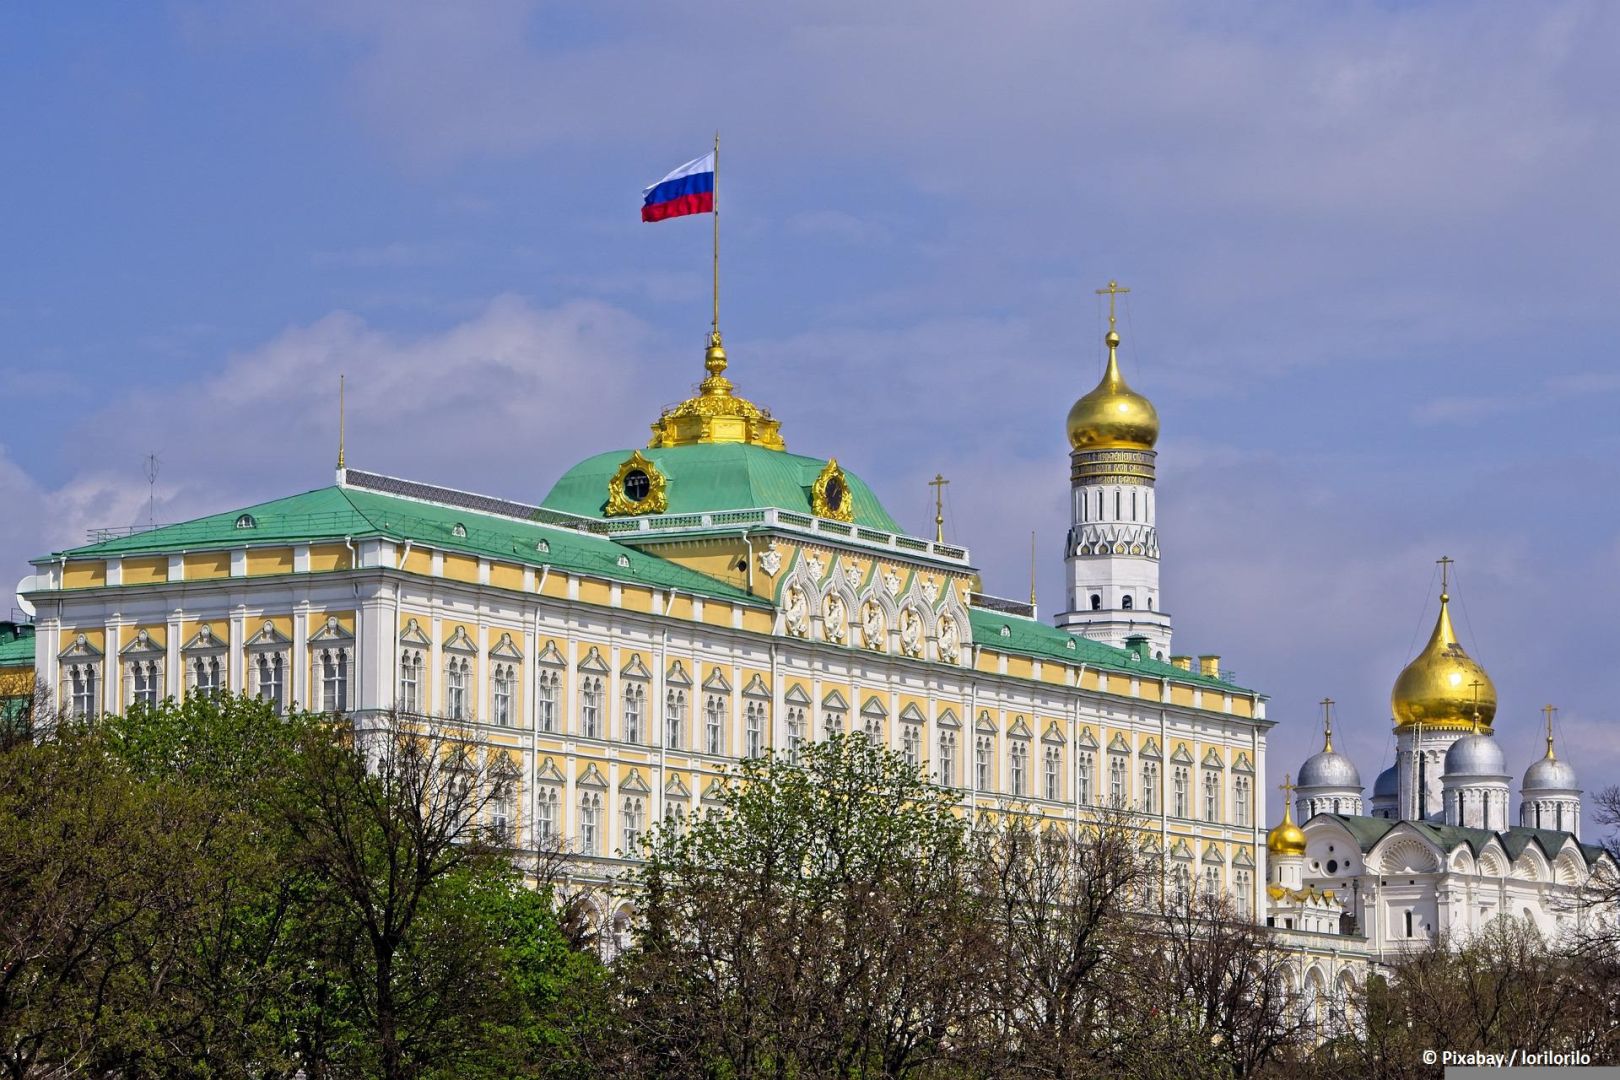 Putin-Gegner warnen vor Machtmissbrauch im Kreml - Webseite gesperrt